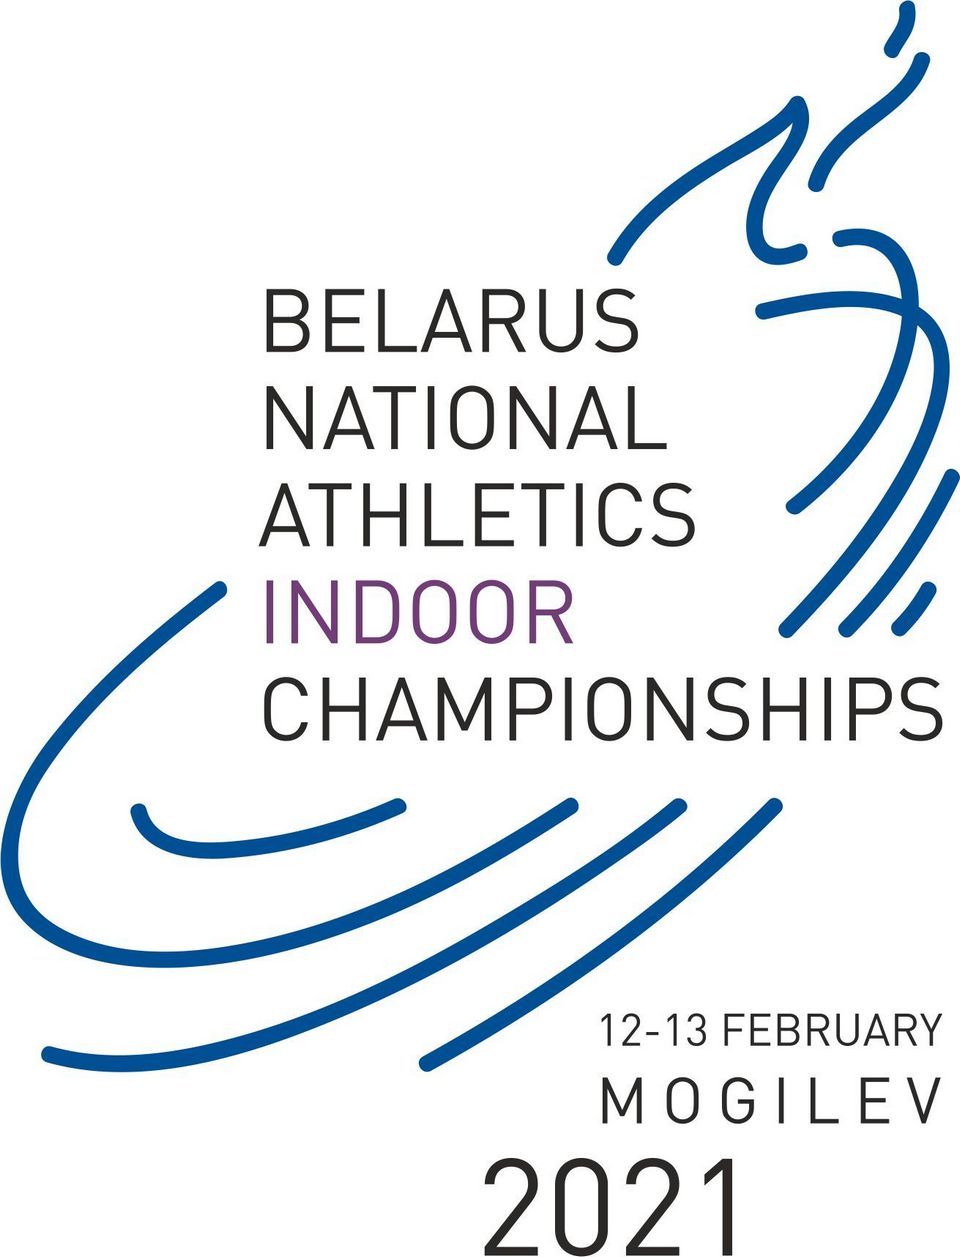 Чемпионат Беларуси по легкой атлетике в помещении пройдет в Могилеве 12-13 февраля   